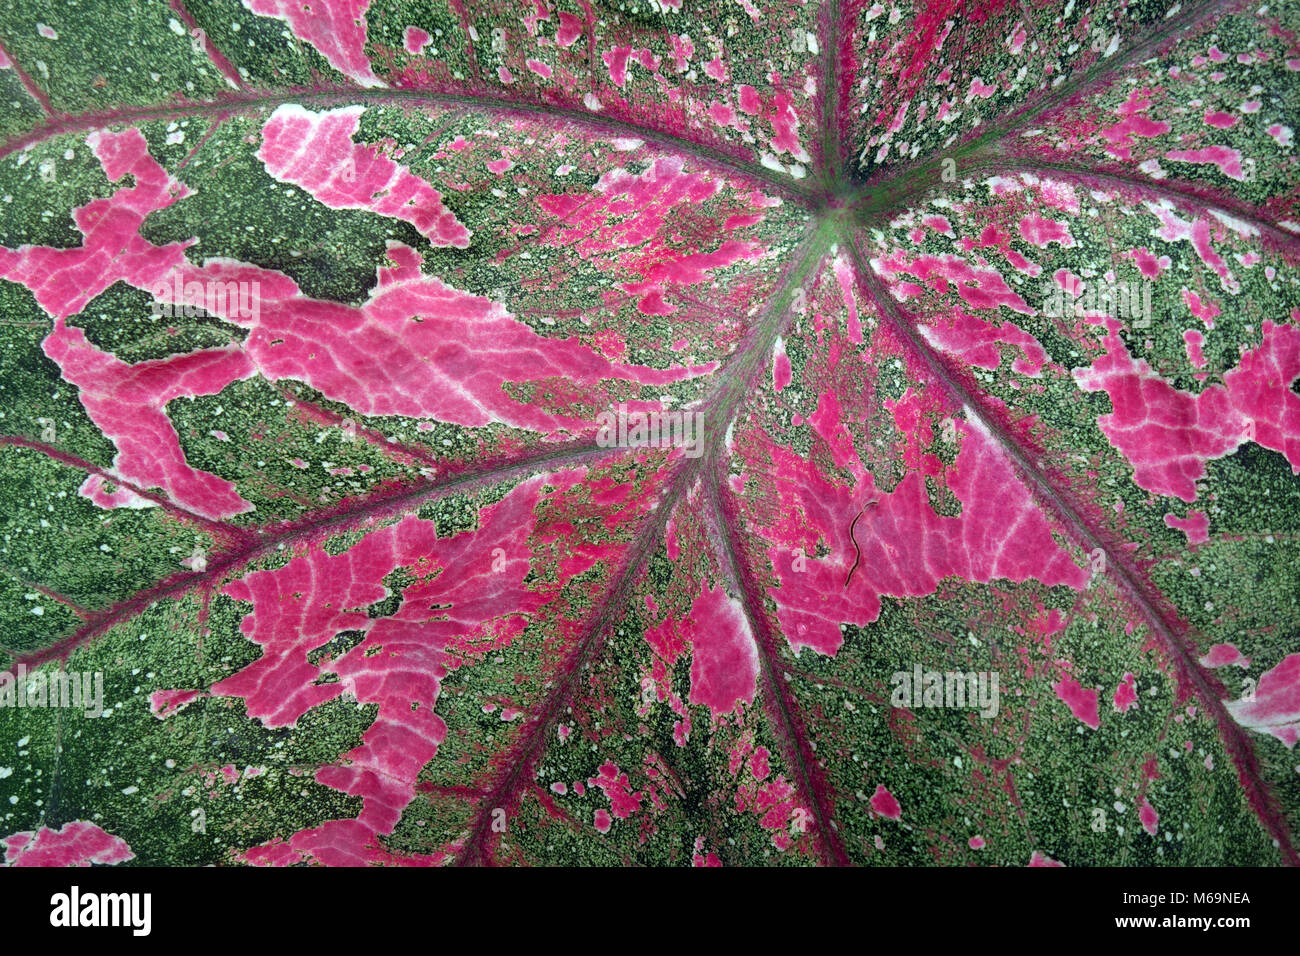 Detail von Rosa und grün Caladium bunte Blatt Stockfoto